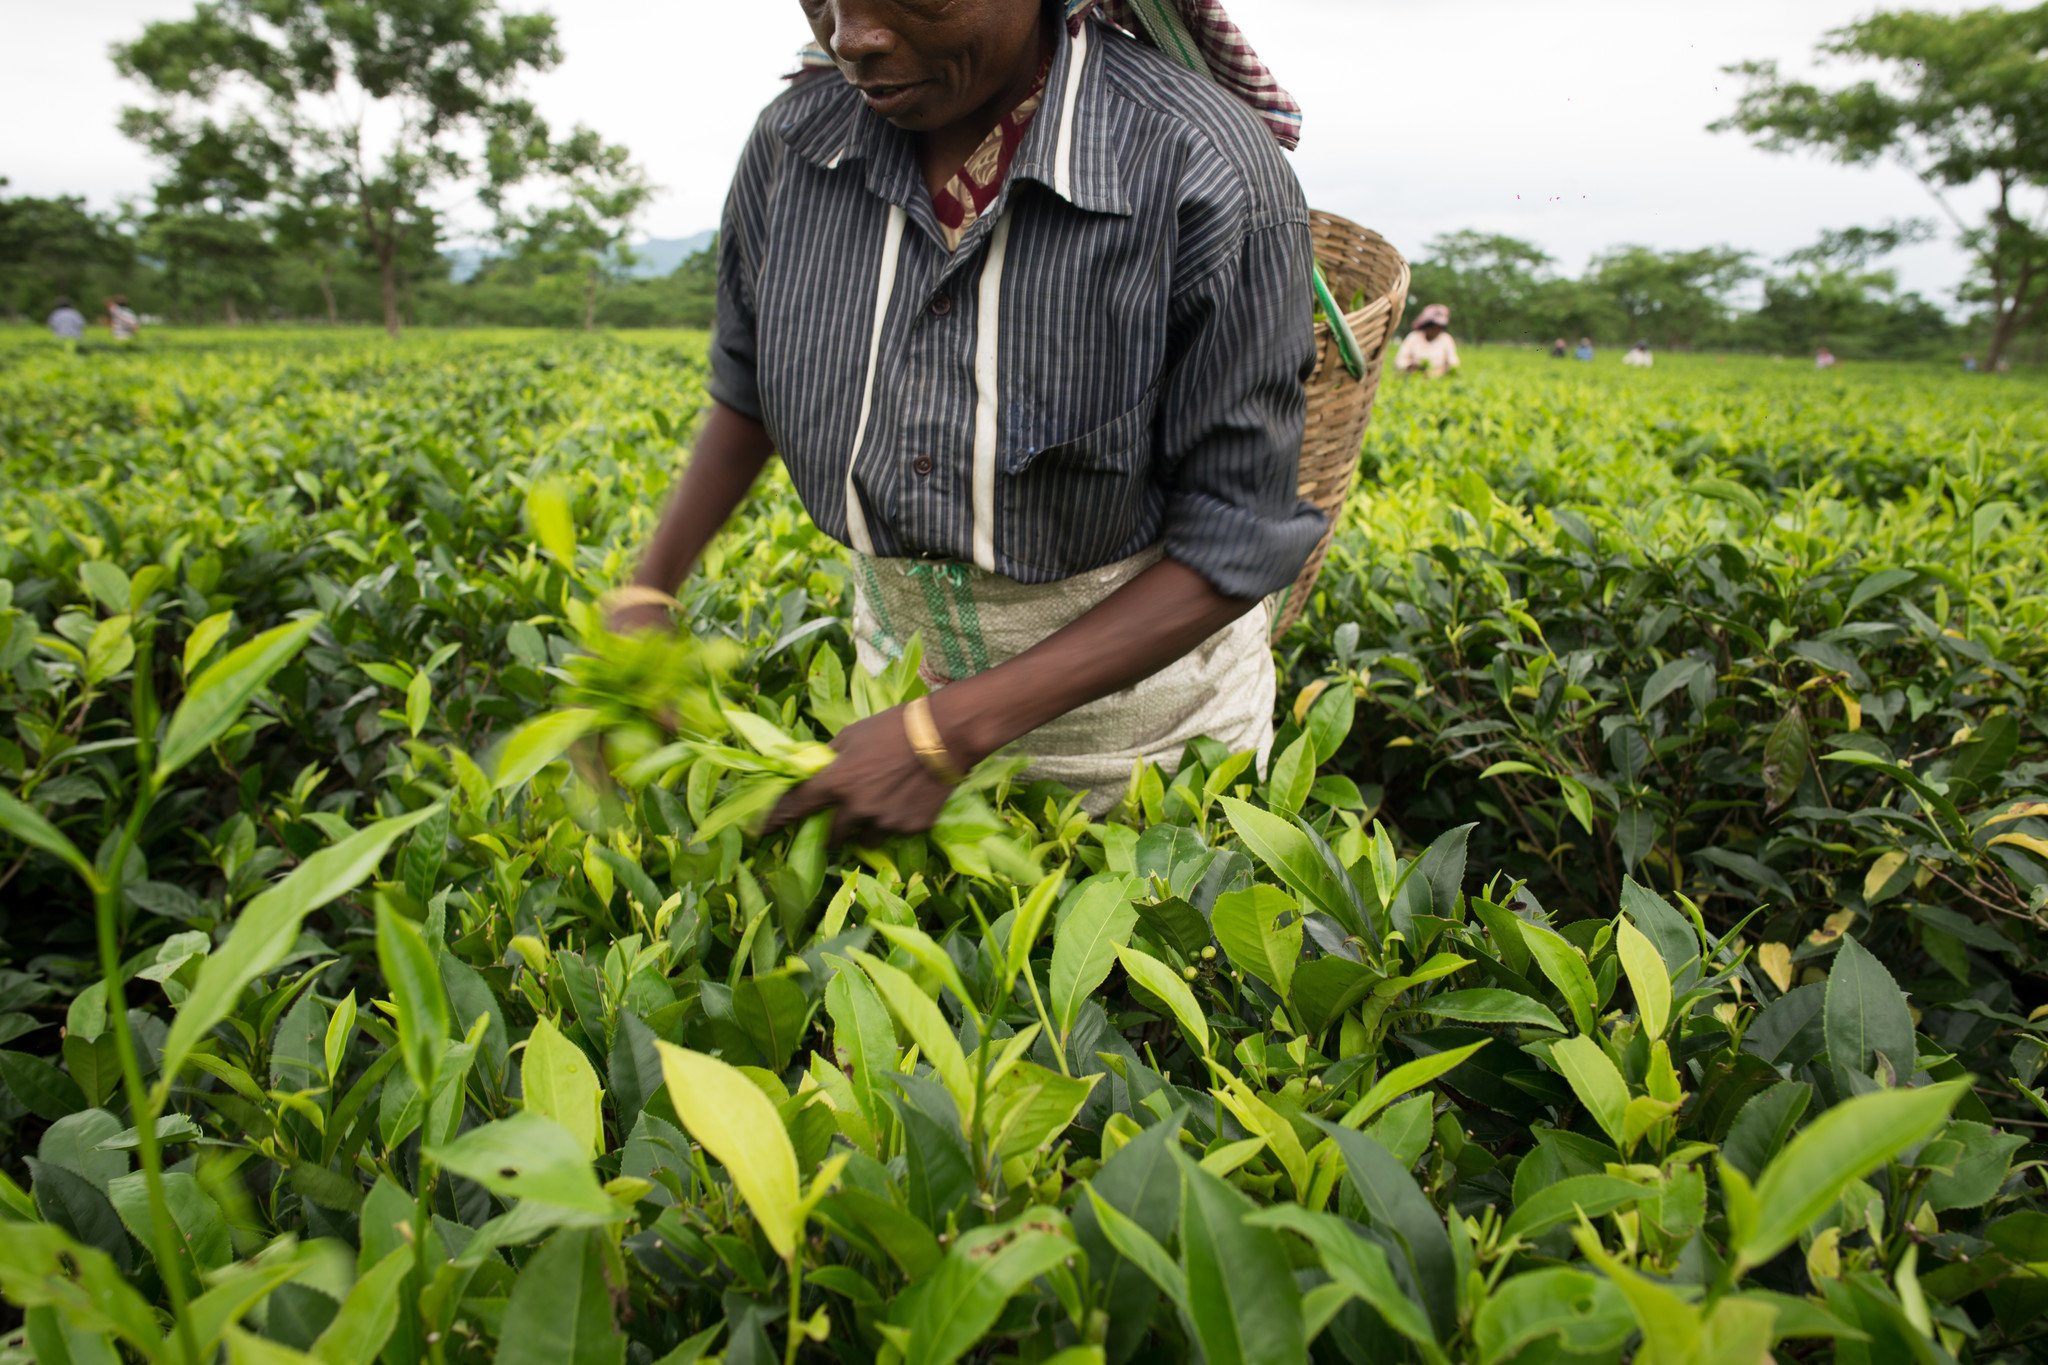 印度︰樂施會和夥伴團體訪問了14個盛產茶葉的地區多名採茶工人，發現全部受訪者已停工多月，當中不少人正面對糧食不足的情況，急需外界支援。